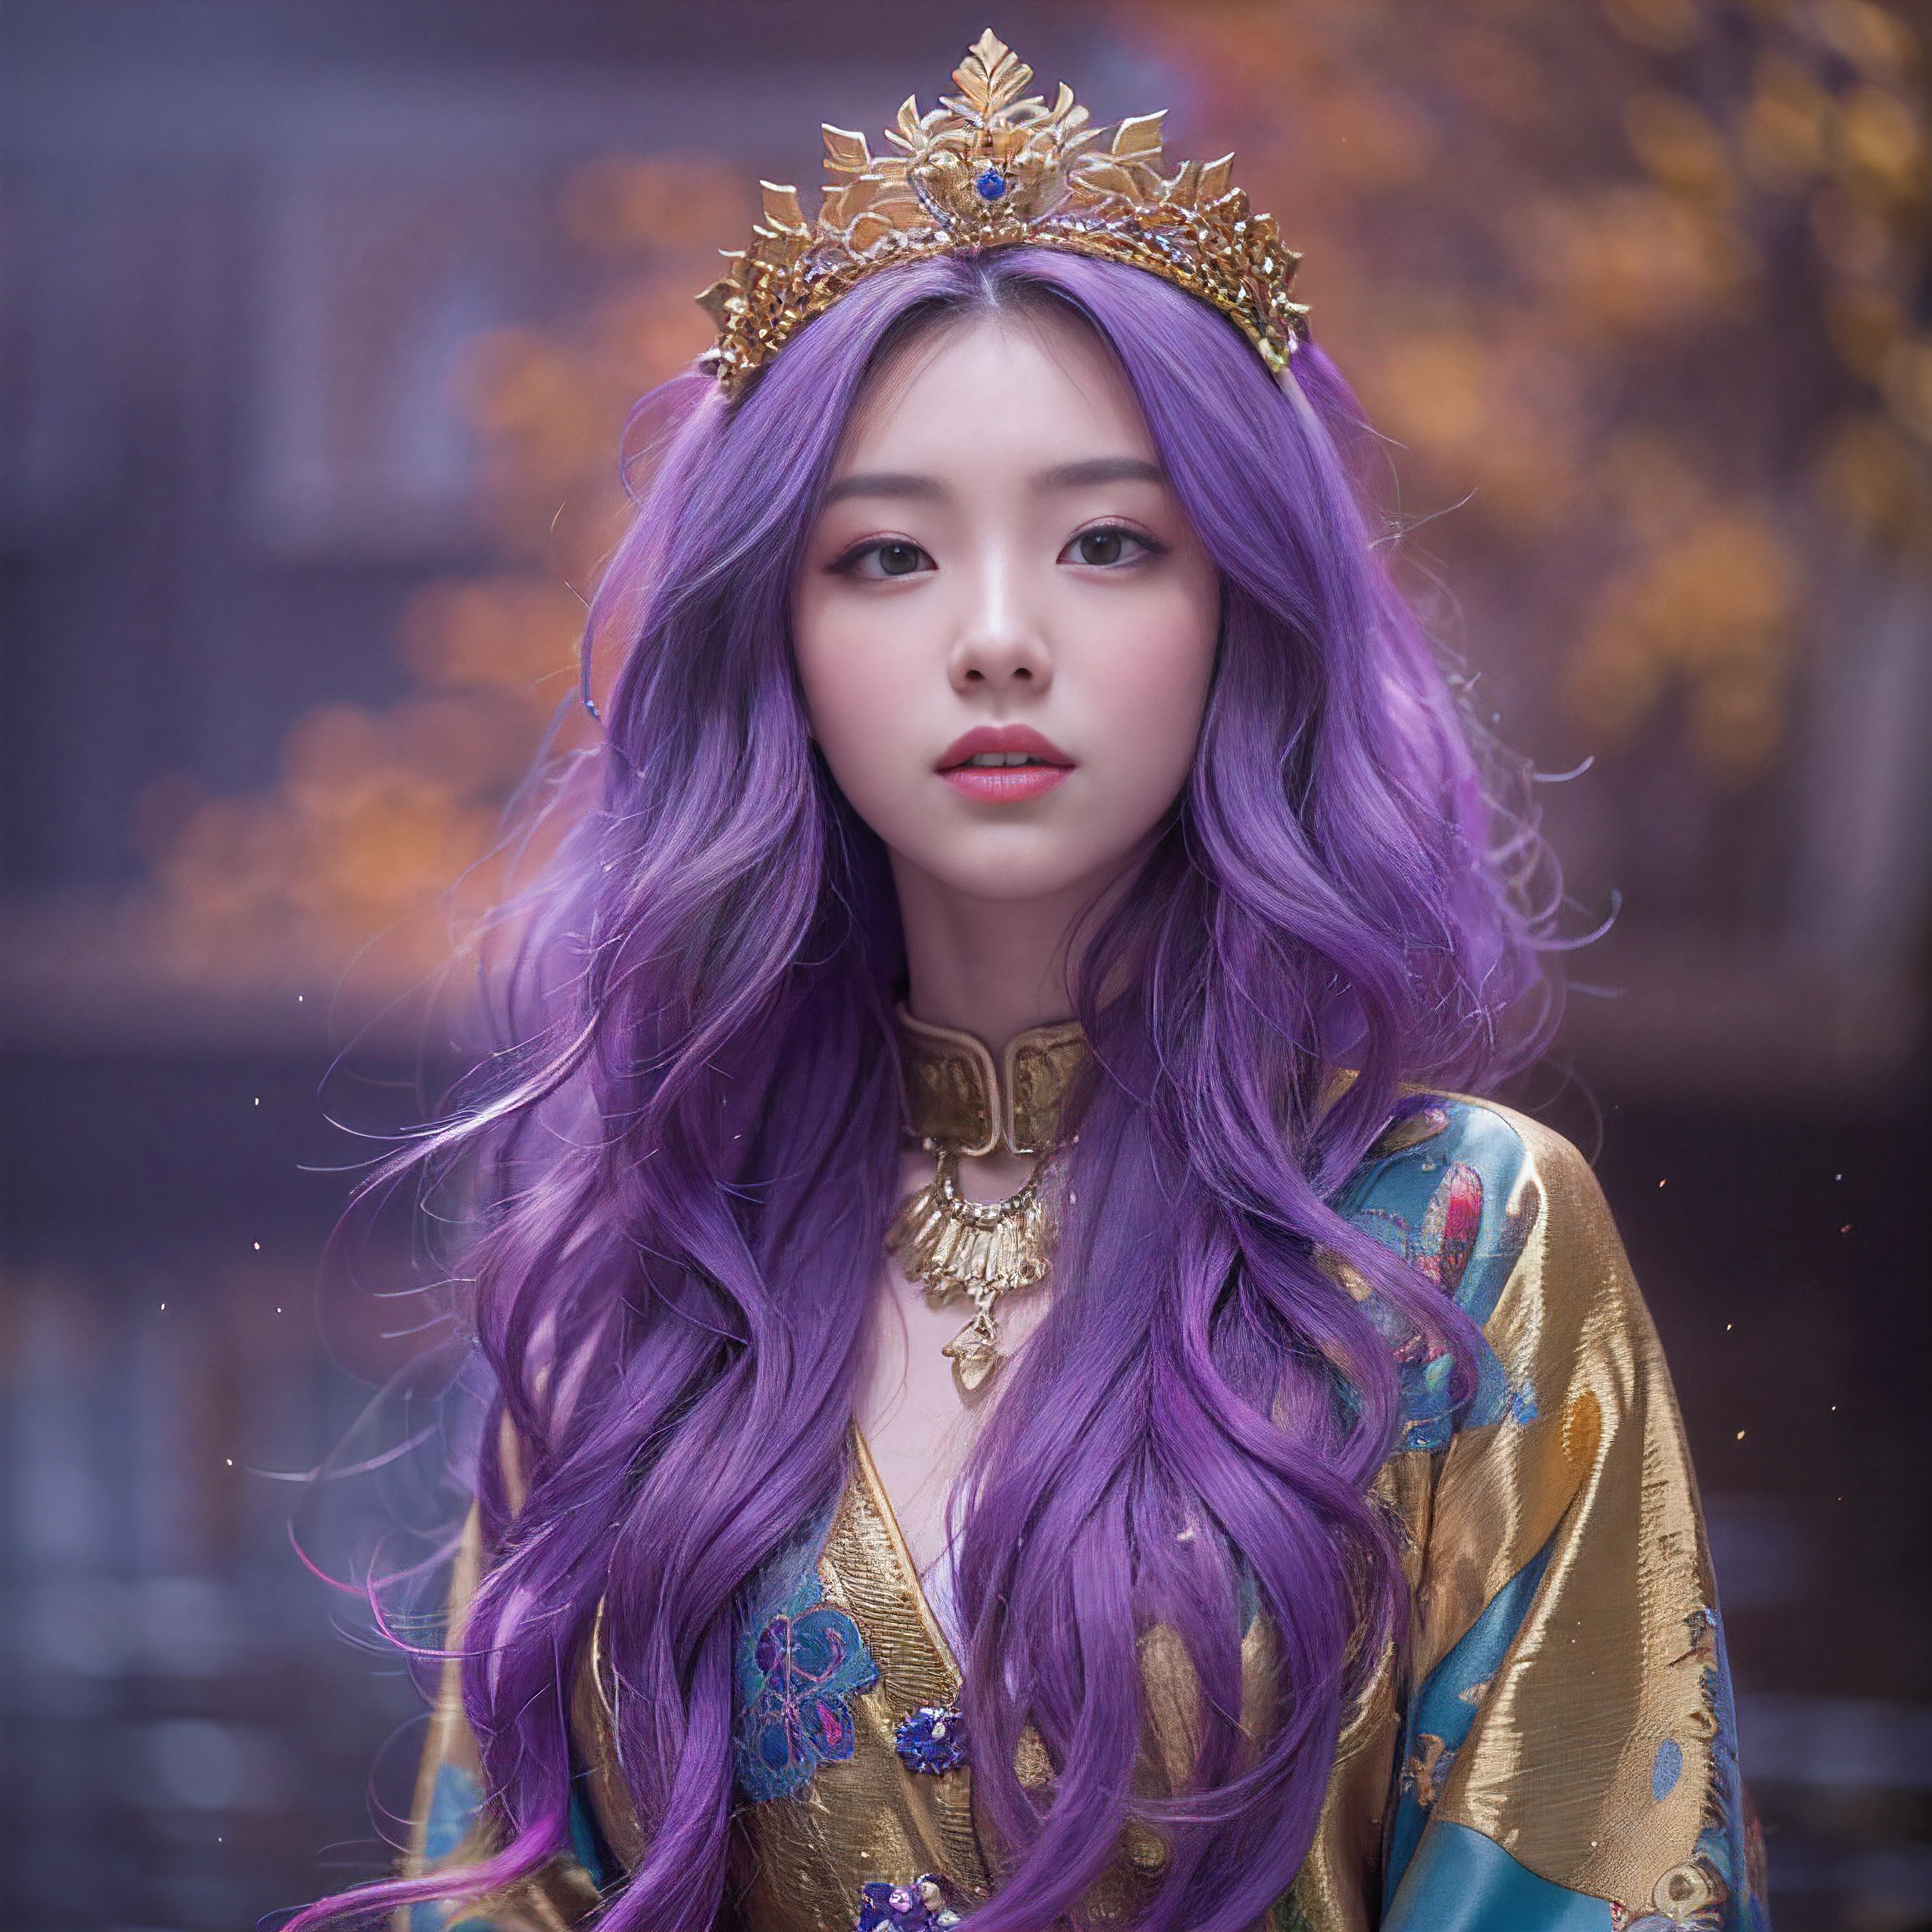 Genki Girl 32k（傑作，高畫質，超高畫質，32k）亮紫色長髮飄逸，秋天的池塘，盛开， 一种颜色， 亚洲人 （元氣少女）， （絲巾）， 战斗姿态， 看着地面， 長白髮， 漂浮的亮紫色， 火雲紋金色頭飾， 中國長袖金絲服裝， （抽像元宇宙飛濺：1.2）， 白色背景，蓮花元氣護身符（現實地：1.4），亮紫色的头发，路上冒煙，背景很純淨， 高解析度， 细节， RAW 照片， 夏普再保险， 尼康 D850 膠卷照片由 Jefferies Lee 拍攝 4 柯達 Portra 400 相機 F1.6 枪, 丰富的色彩, 超逼真生動的紋理, 戲劇性的燈光, 虛幻引擎藝術站趨勢, 西奈斯特800，一個有著長長飄逸亮紫色頭髮的女孩